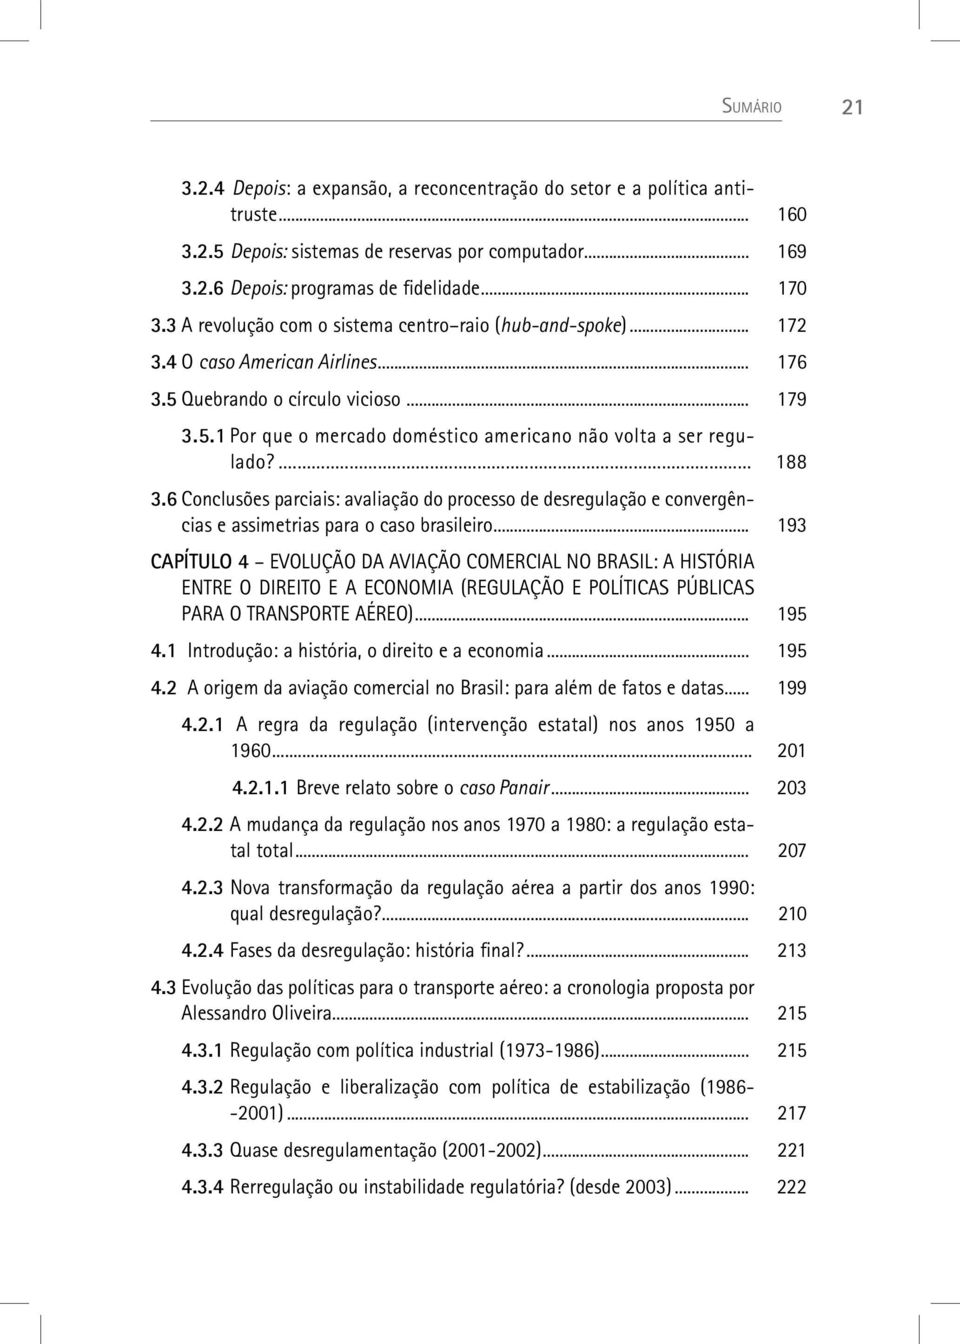 ... 188 3.6 Conclusões parciais: avaliação do processo de desregulação e convergências e assimetrias para o caso brasileiro.